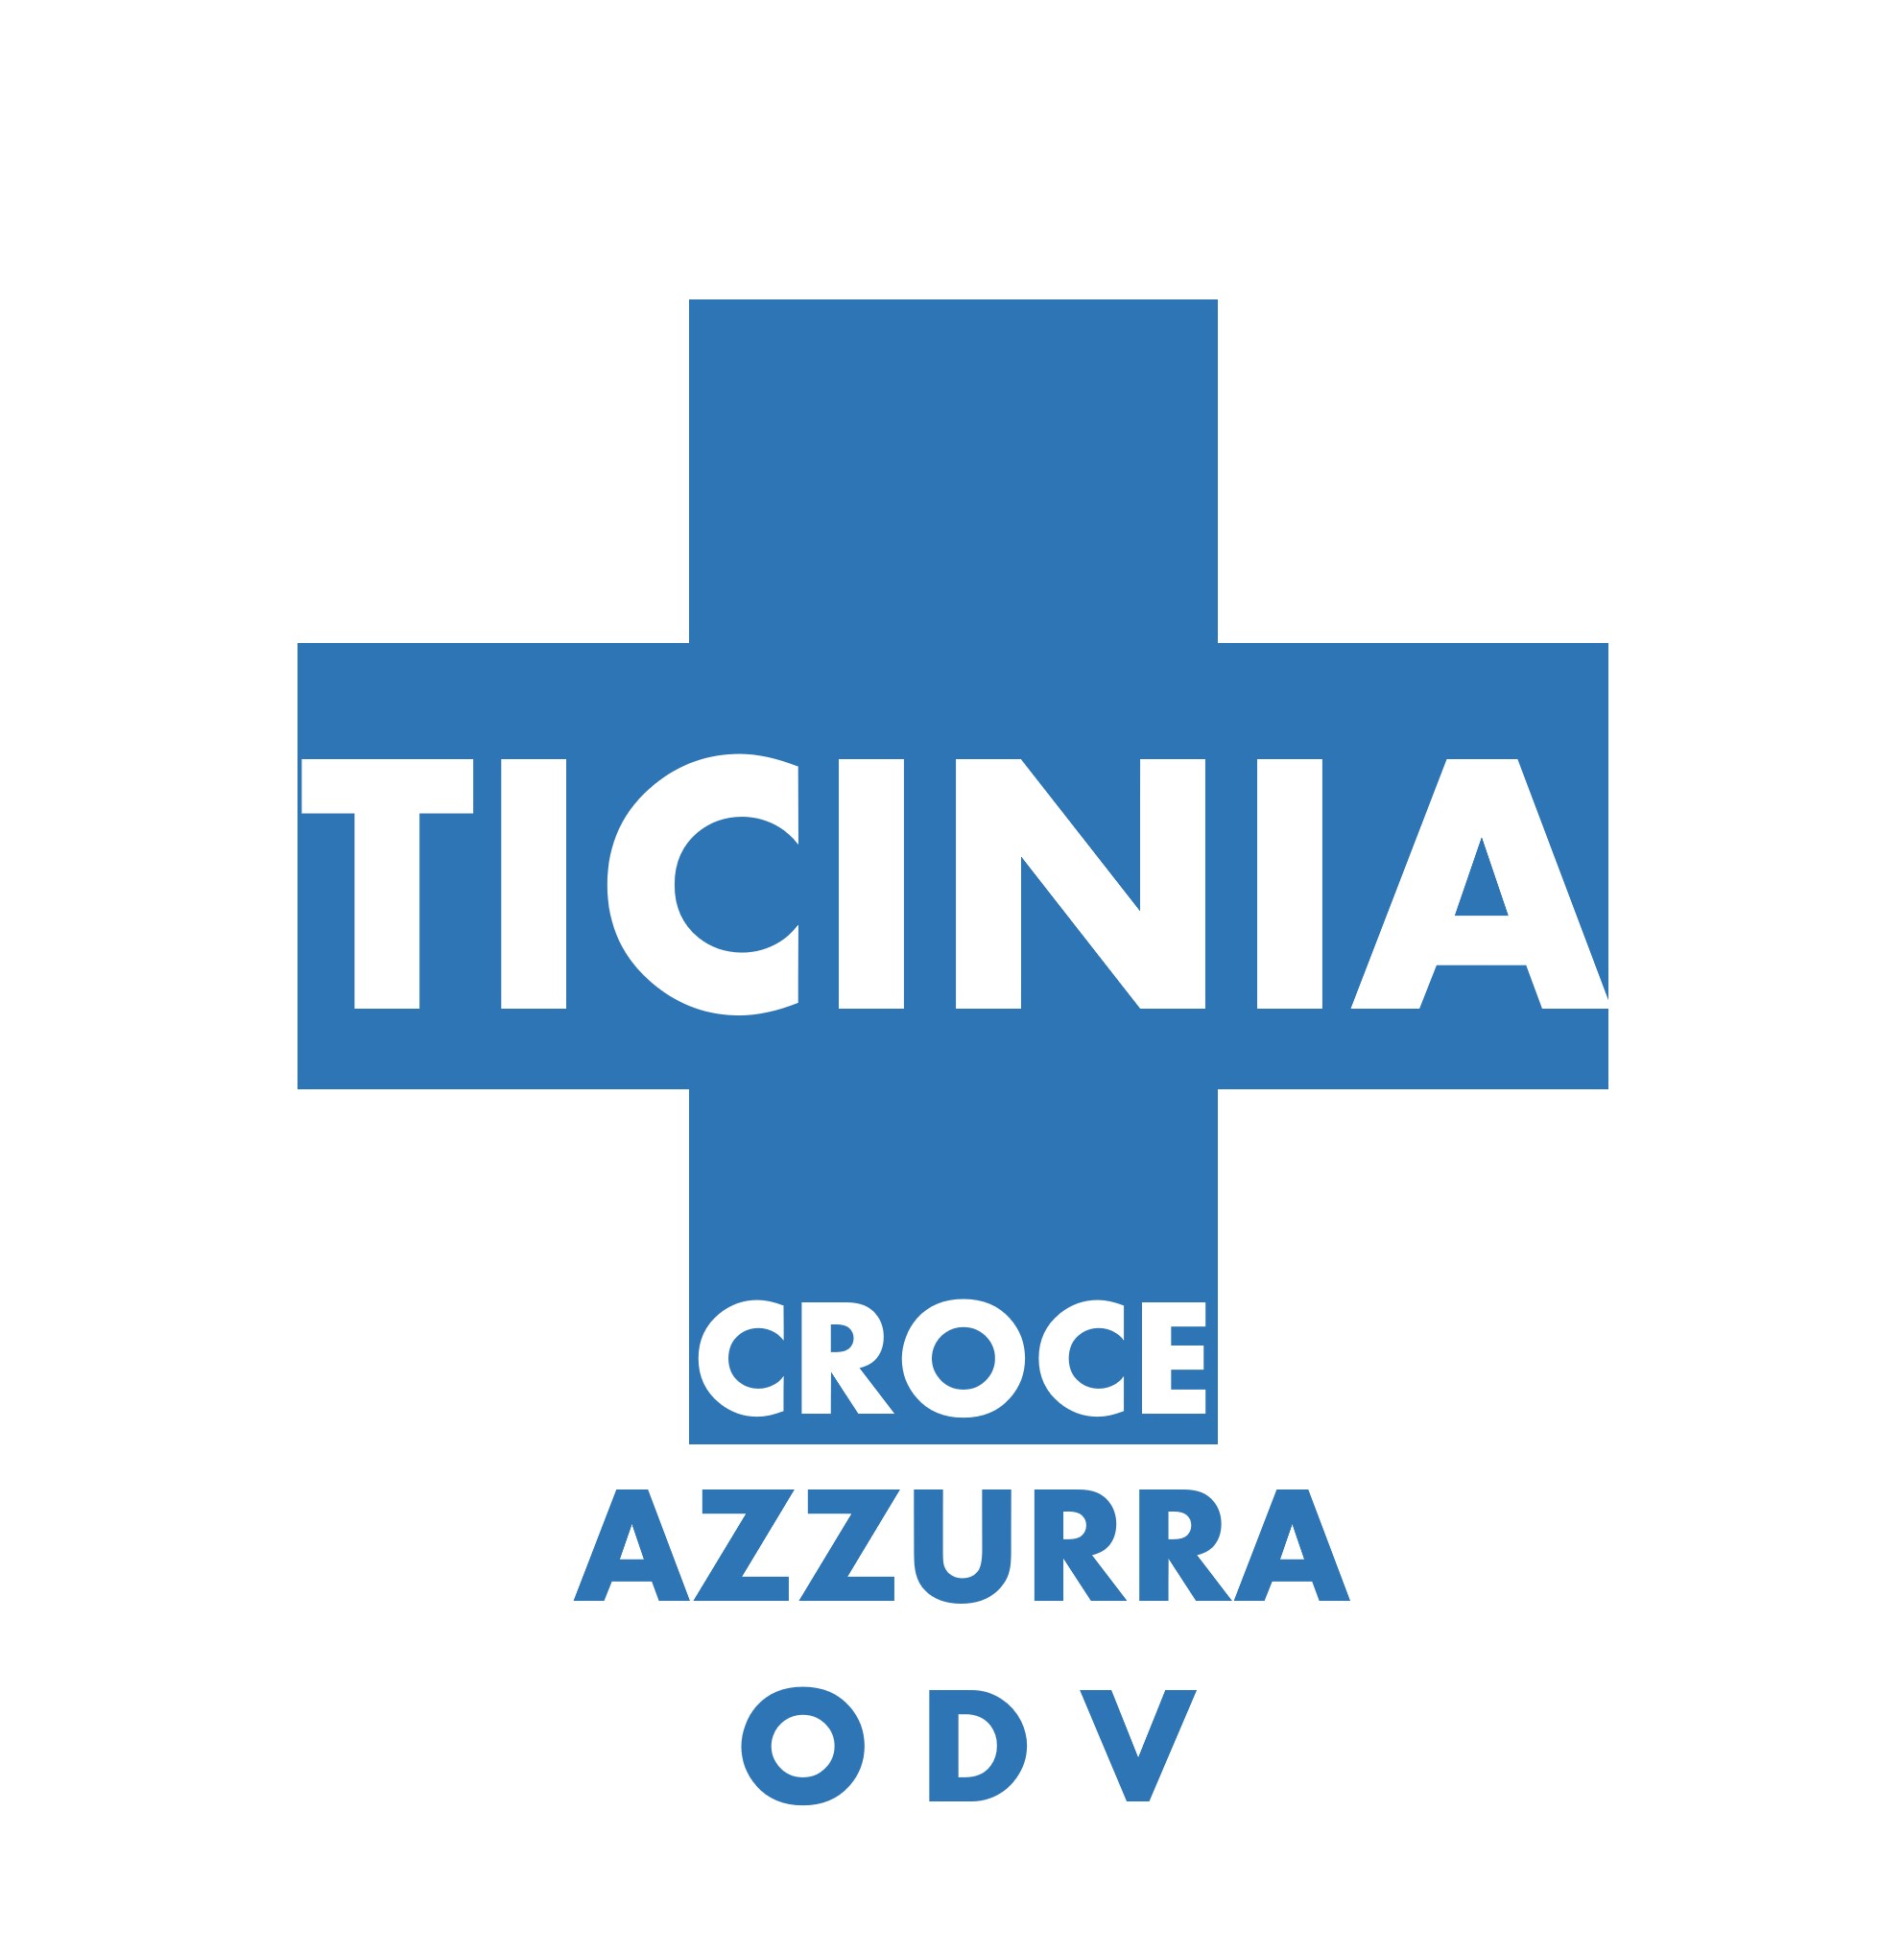 Archivio Storico Croce Azzurra Ticinia - Croce Azzurra Ticinia ODV - 2010/11 - Delibera GRL 893